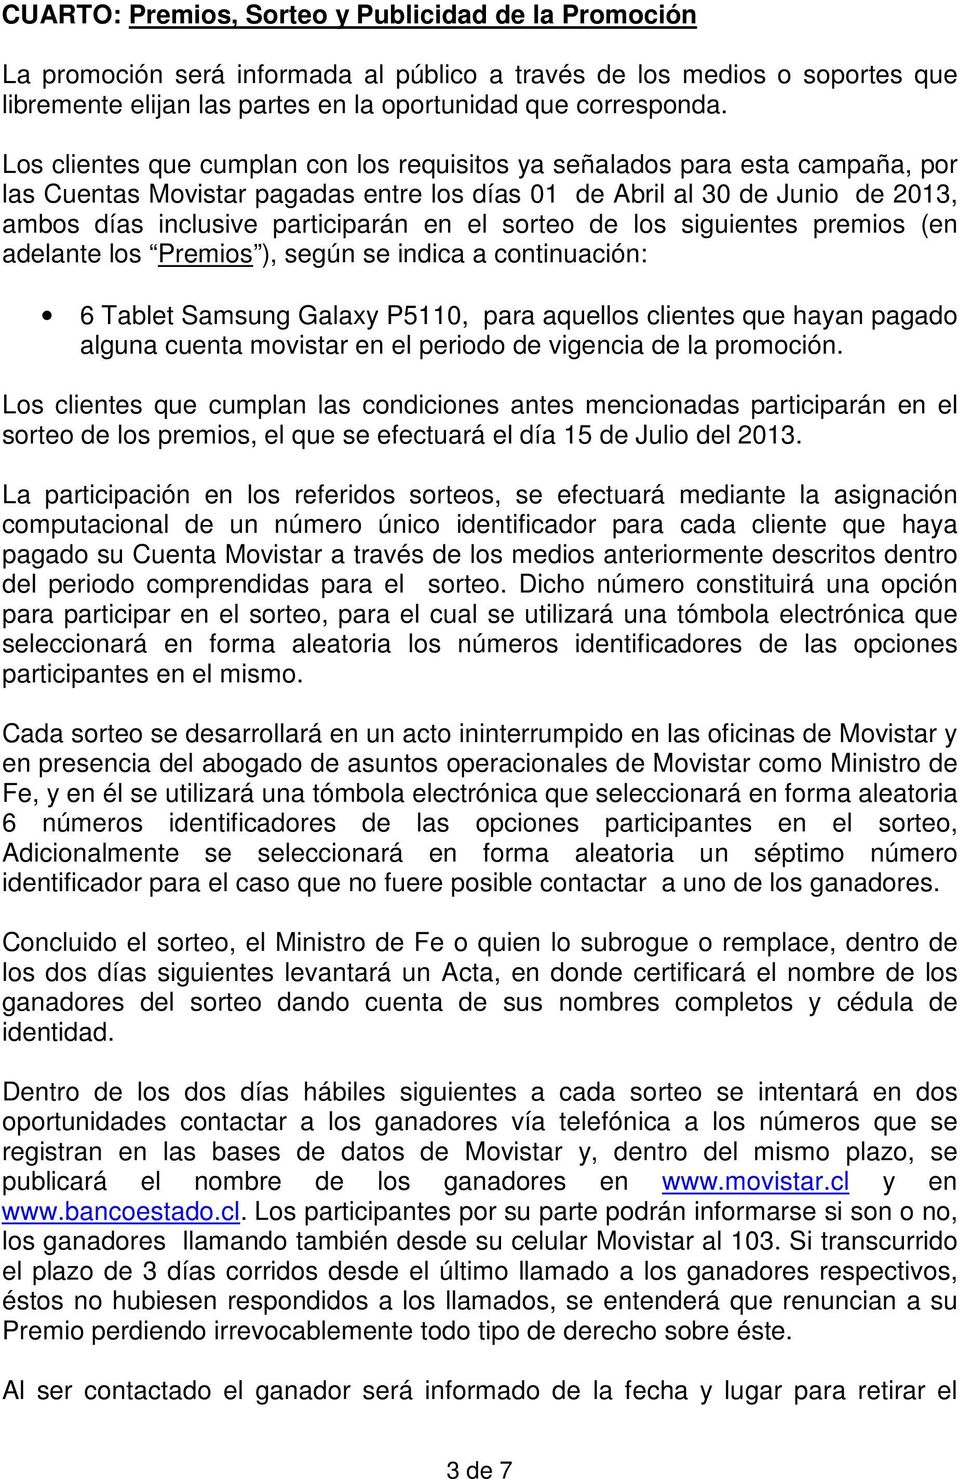 sorteo de los siguientes premios (en adelante los Premios ), según se indica a continuación: 6 Tablet Samsung Galaxy P5110, para aquellos clientes que hayan pagado alguna cuenta movistar en el